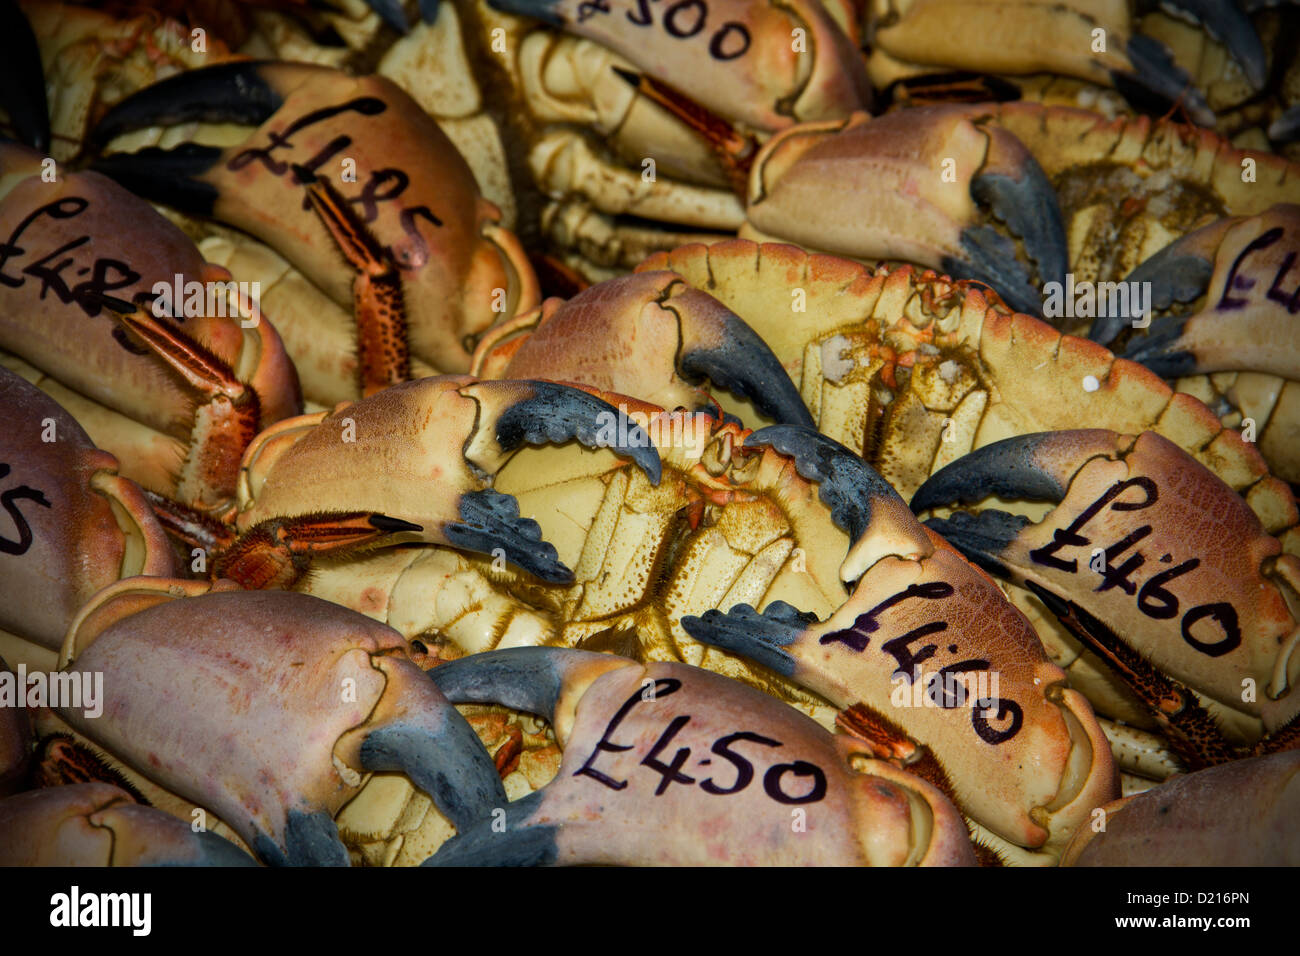 Los cangrejos recién capturados con los precios de venta Foto de stock